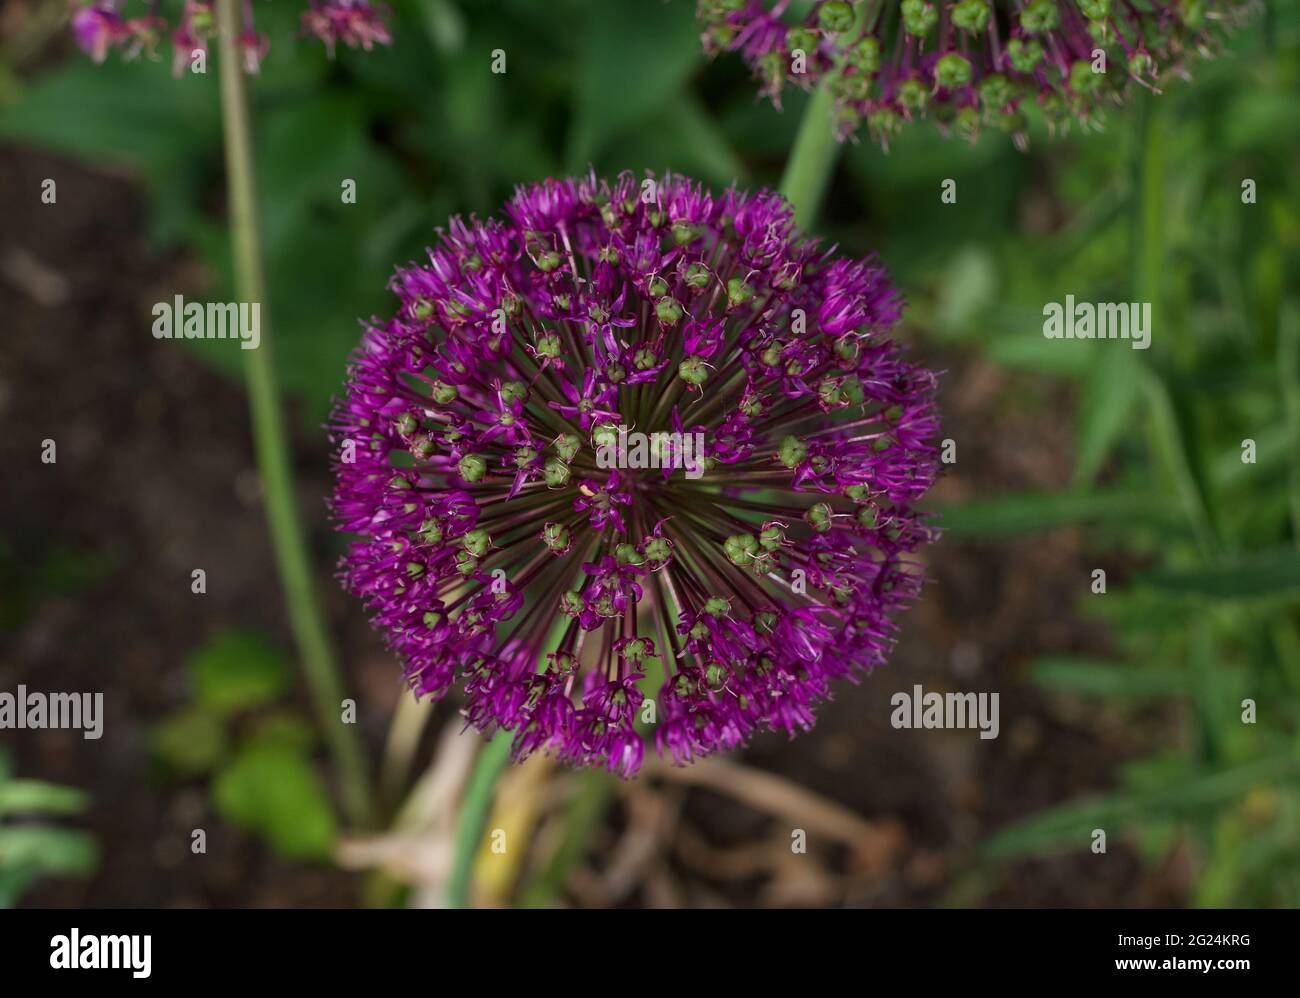 Belle fleur d'allium violet profond et feuillage dans le cadre du jardin Banque D'Images